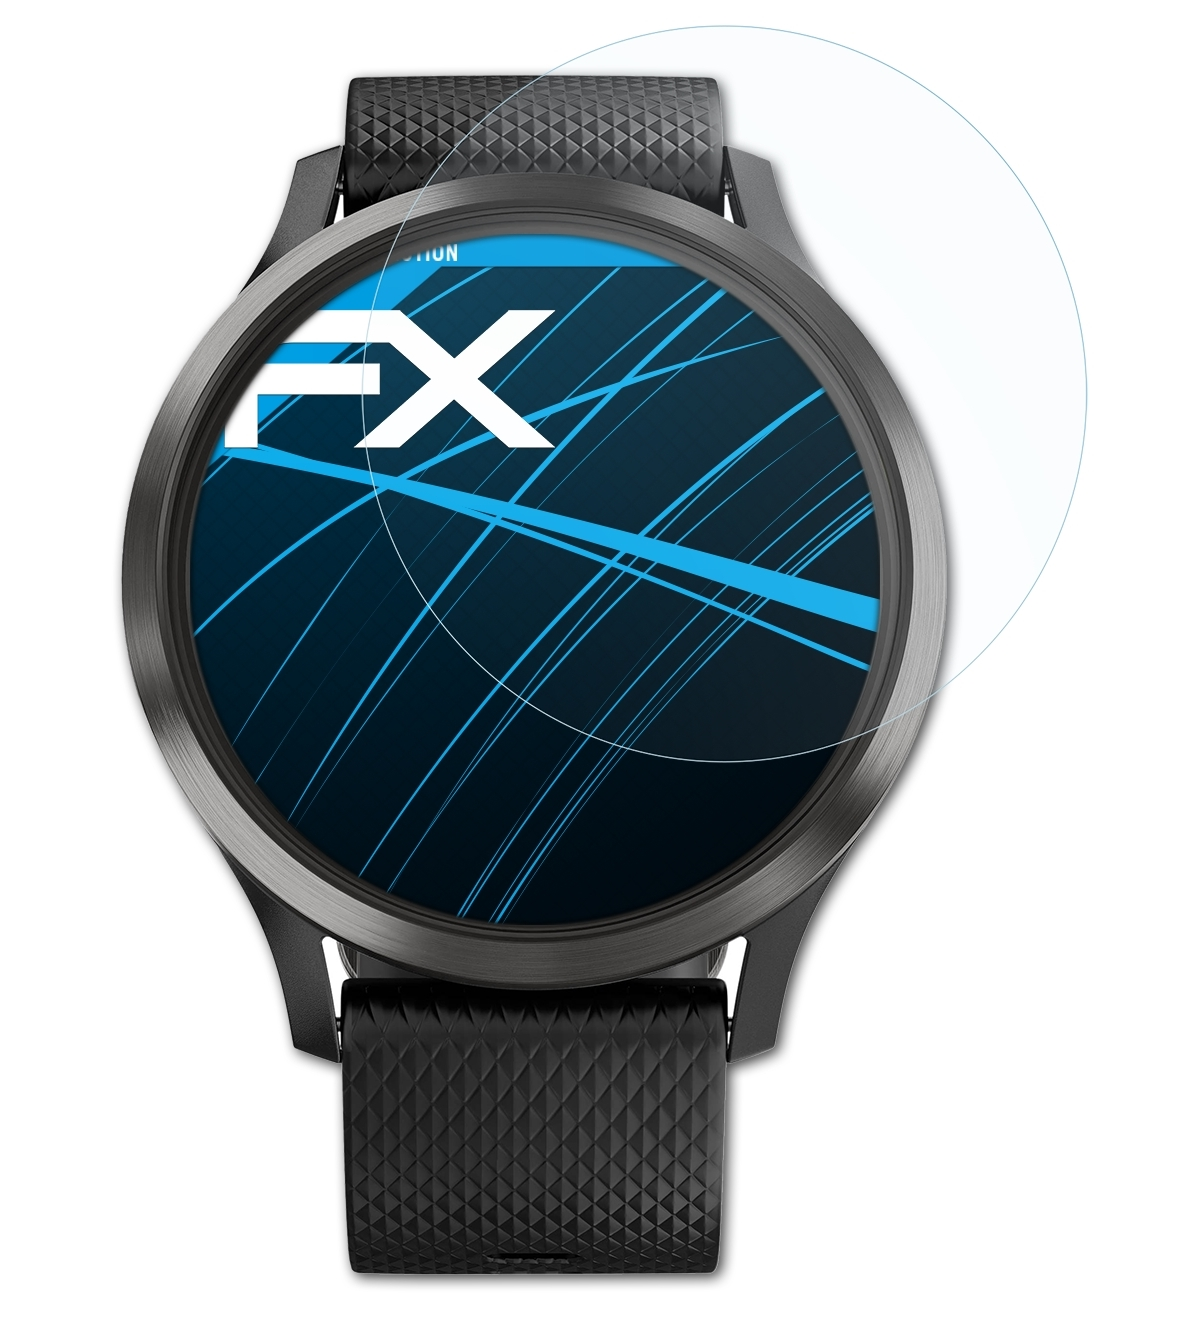 Garmin 3x ATFOLIX FX-Clear Vivomove HR) Displayschutz(für